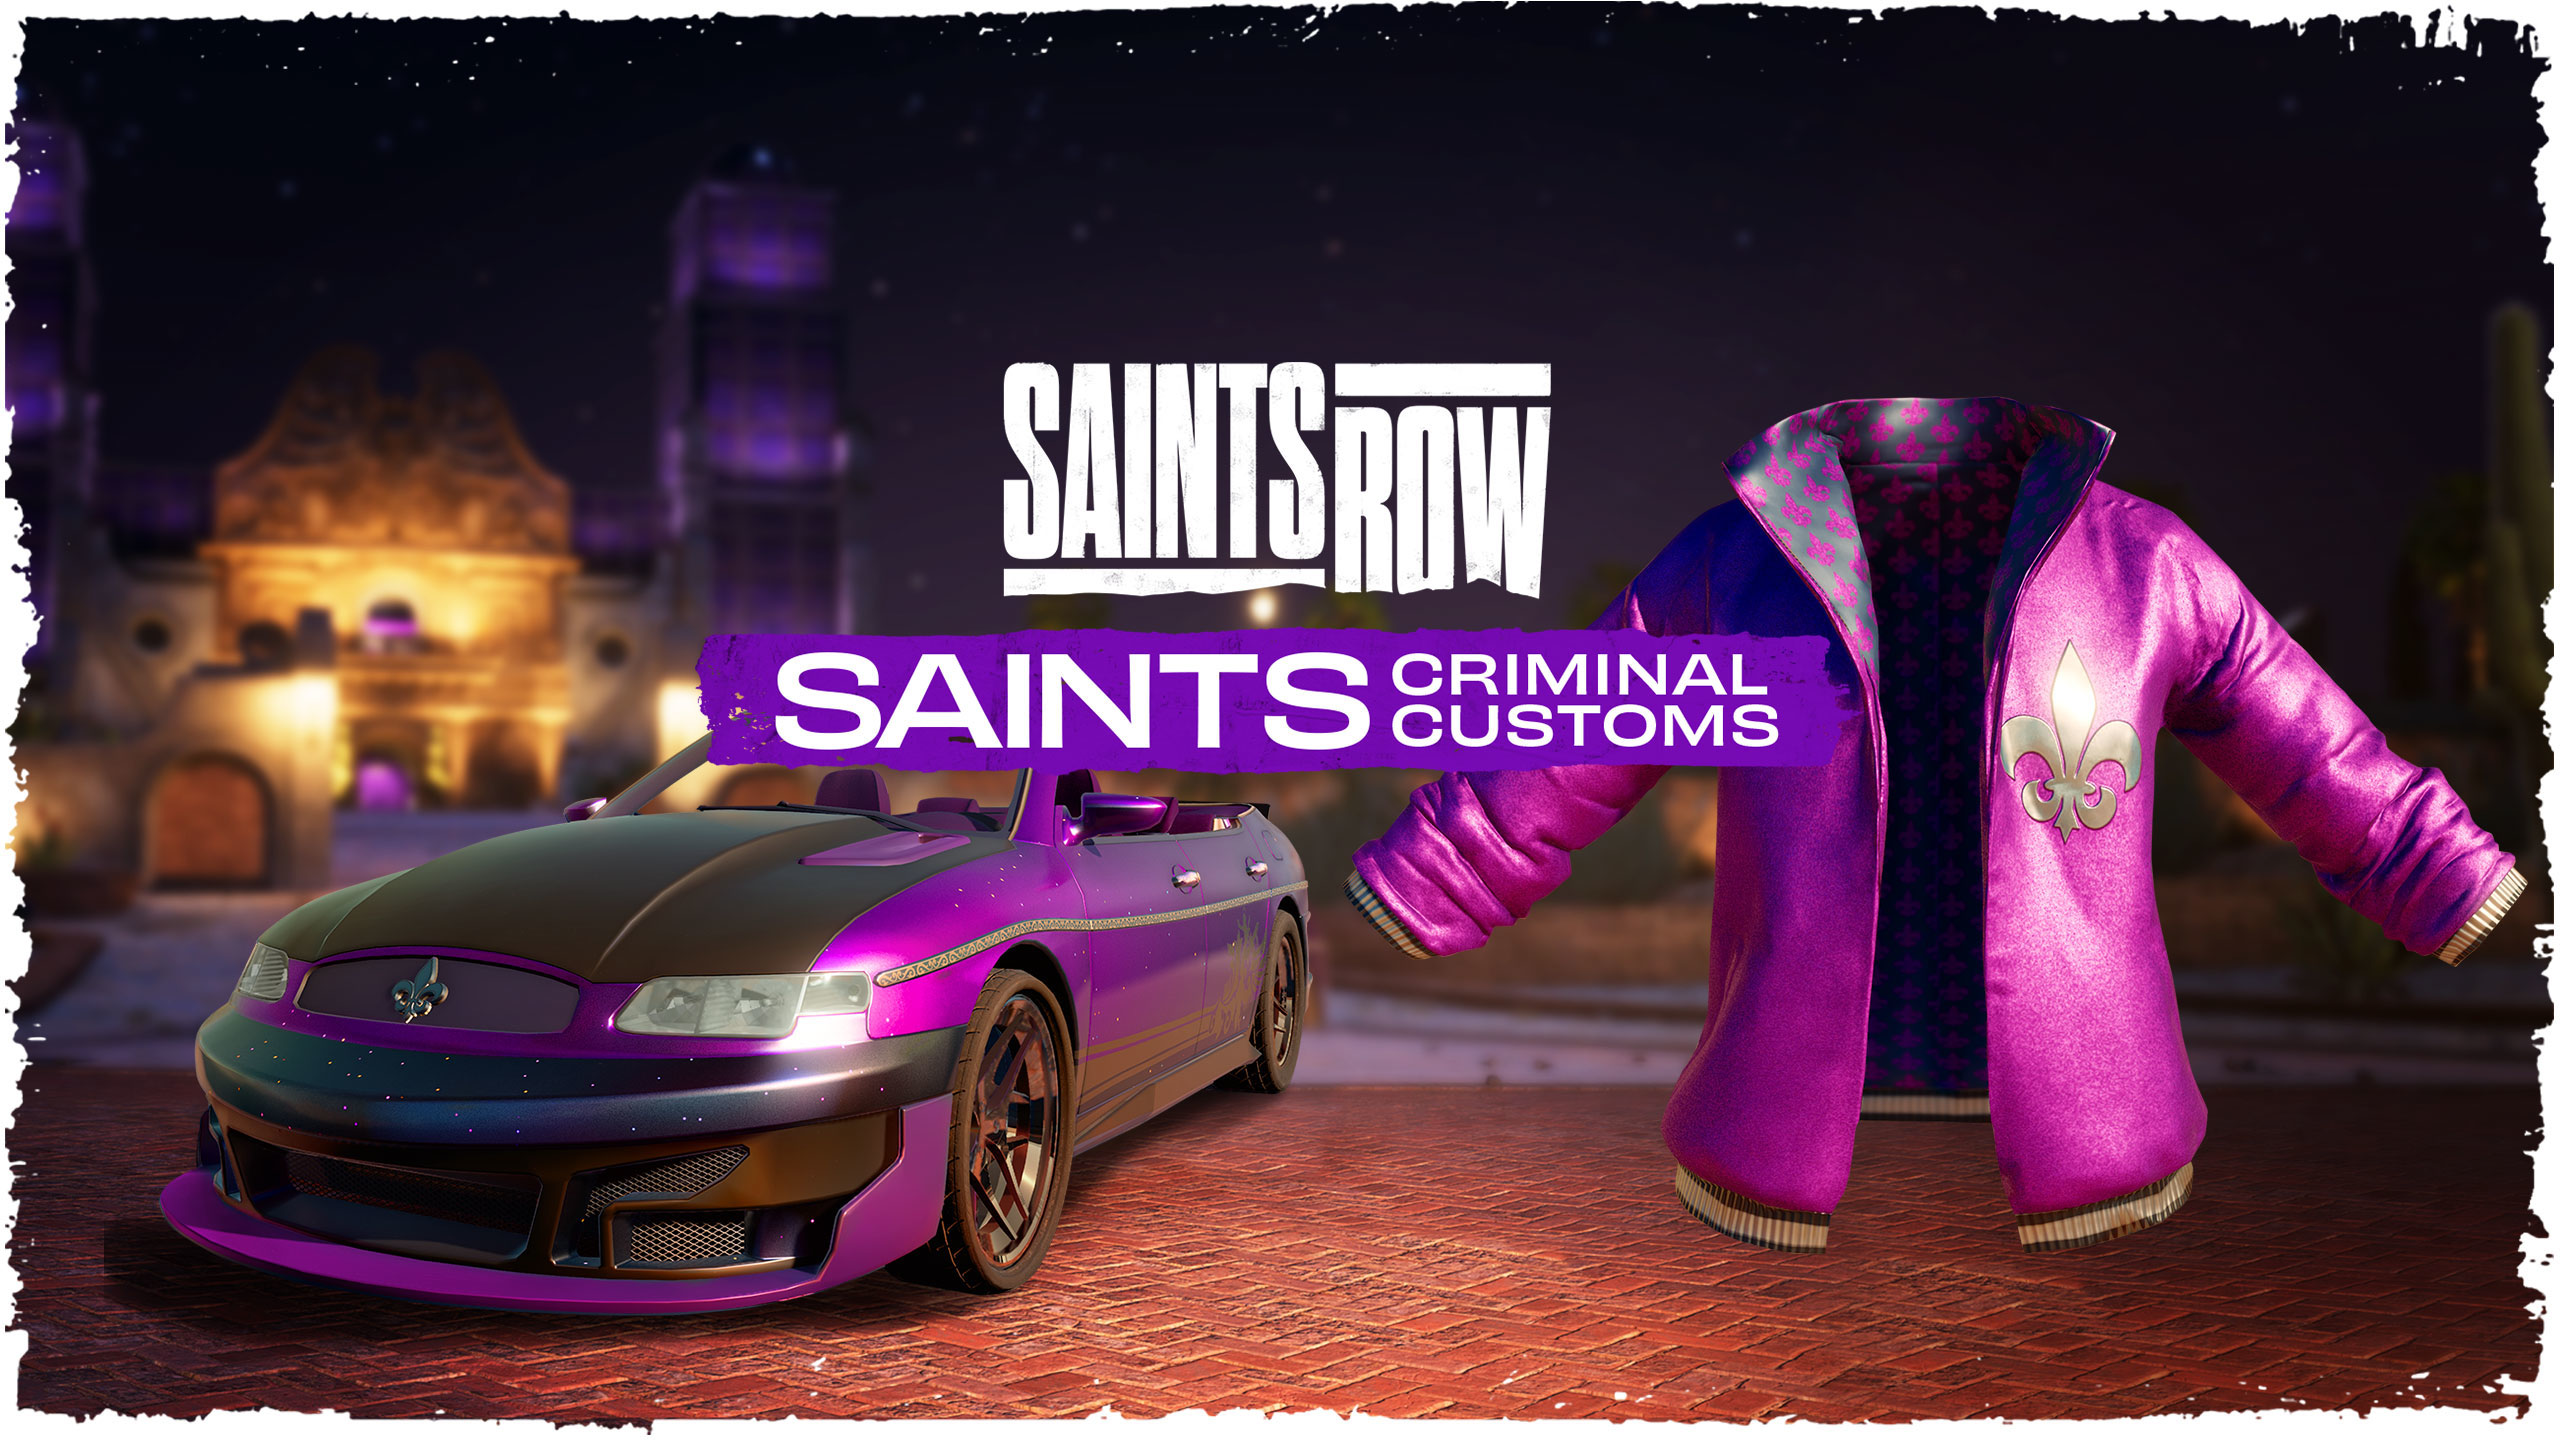 Saints Row Saints Criminal Customs Edition Epic Games CD Key [USD 68.2]